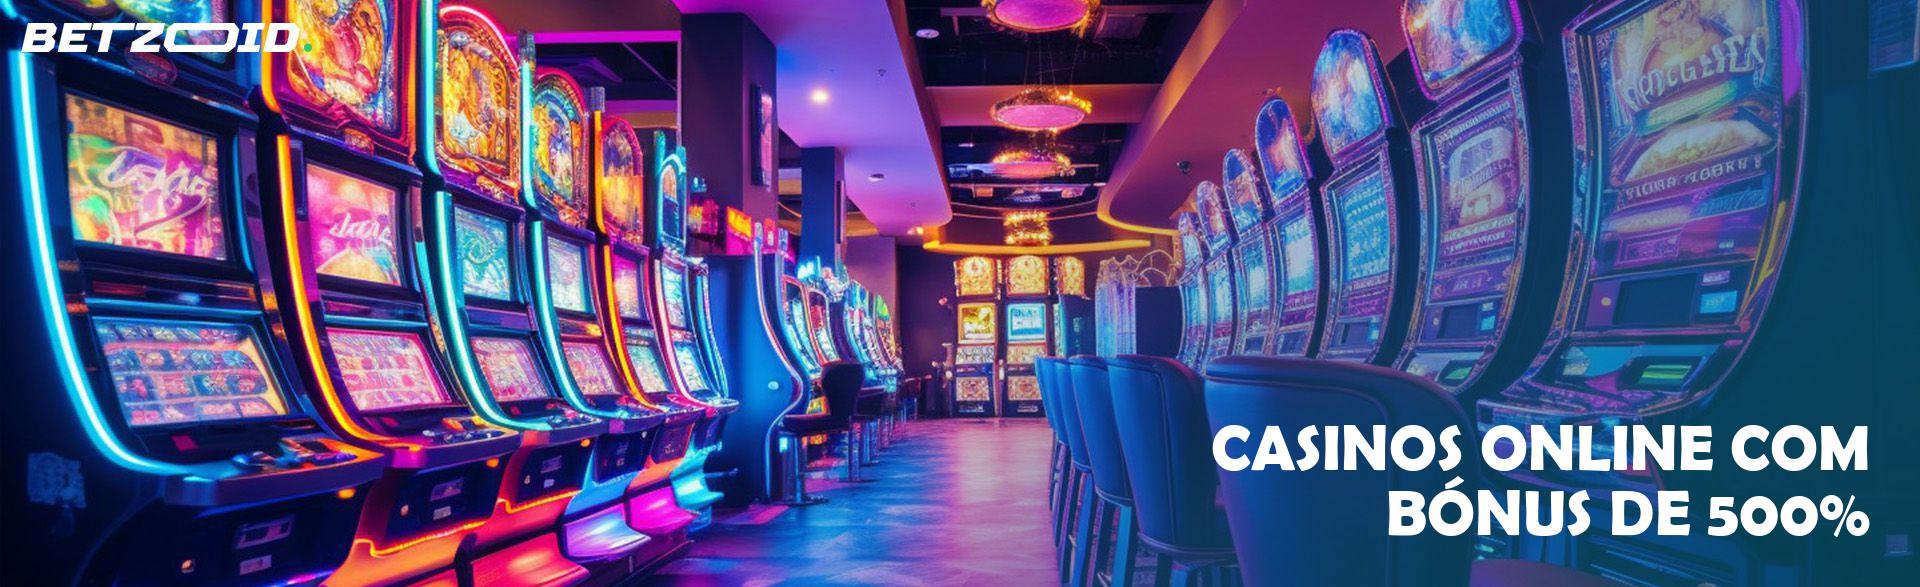 Casinos Online com Bónus de 500%.